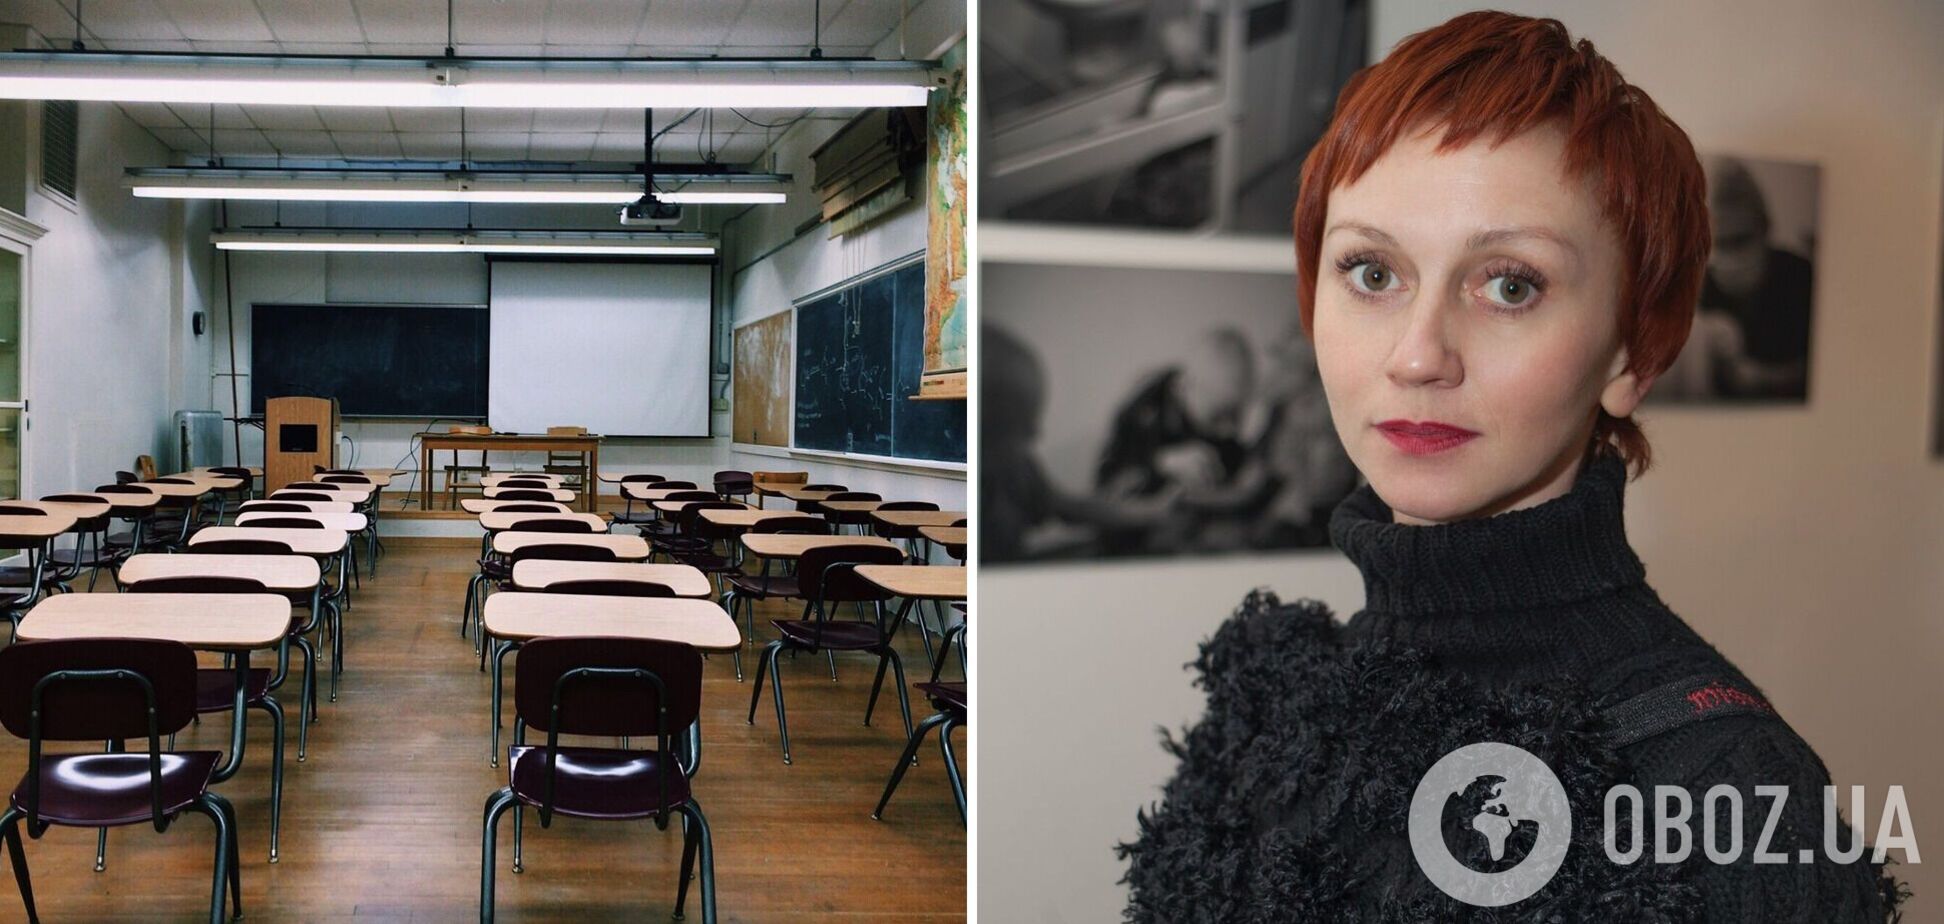 Римма Зюбіна зізналася, що директорка школи в Києві, яка 'зливала' позиції ЗСУ, – її знайома